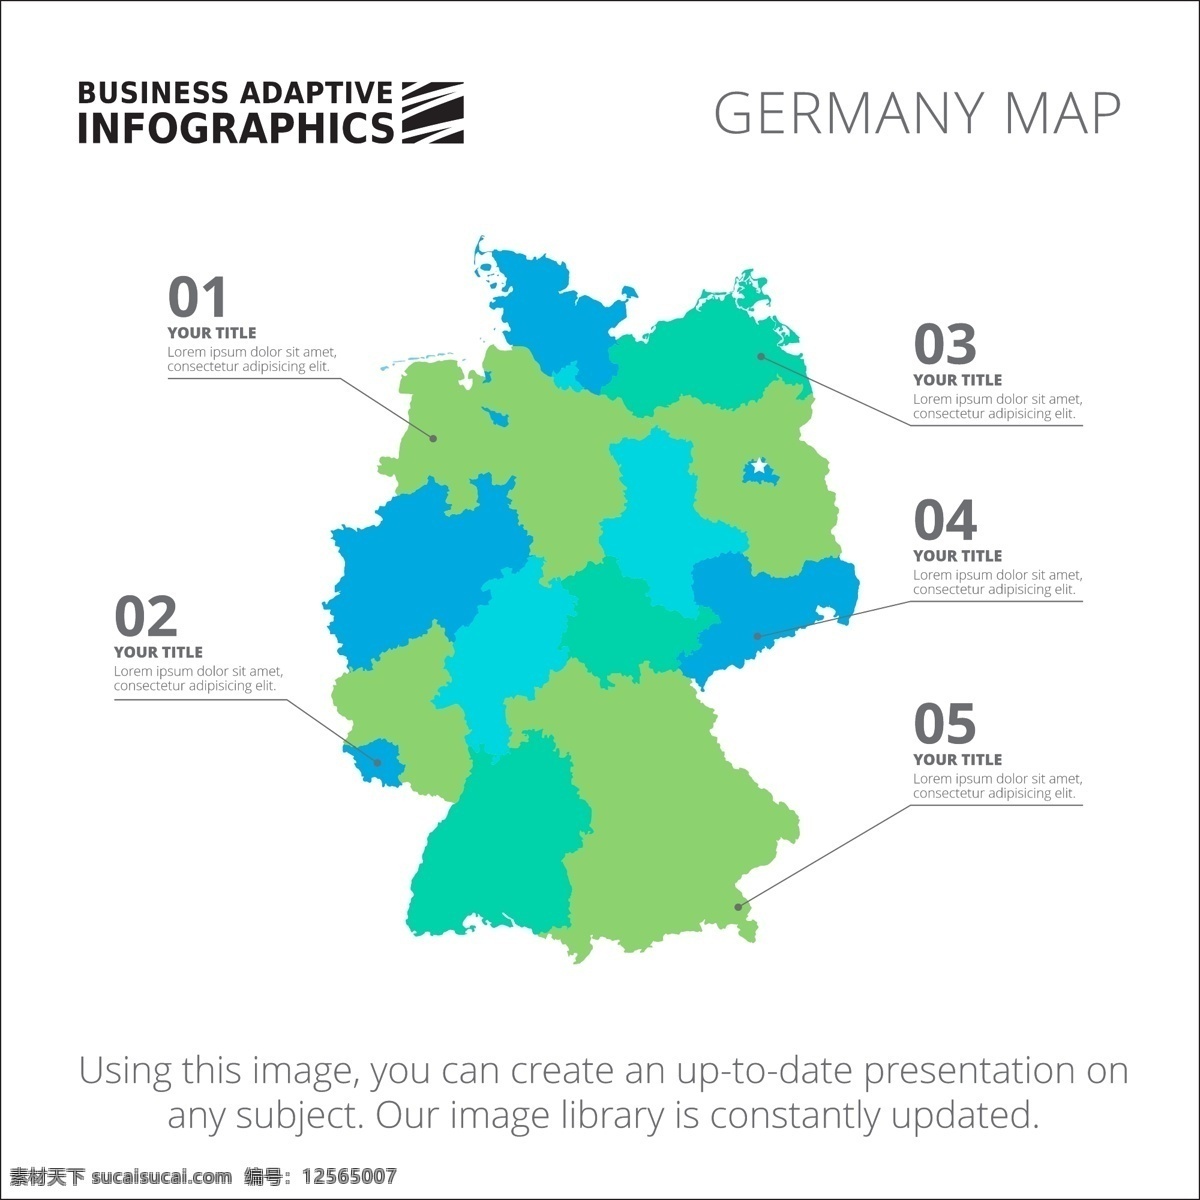 图表模板设计 图表 业务 地图 图形 模板 数字 信息 数据 要素 信息图表元素 德国 颜色 商业图表 infography 图表模板